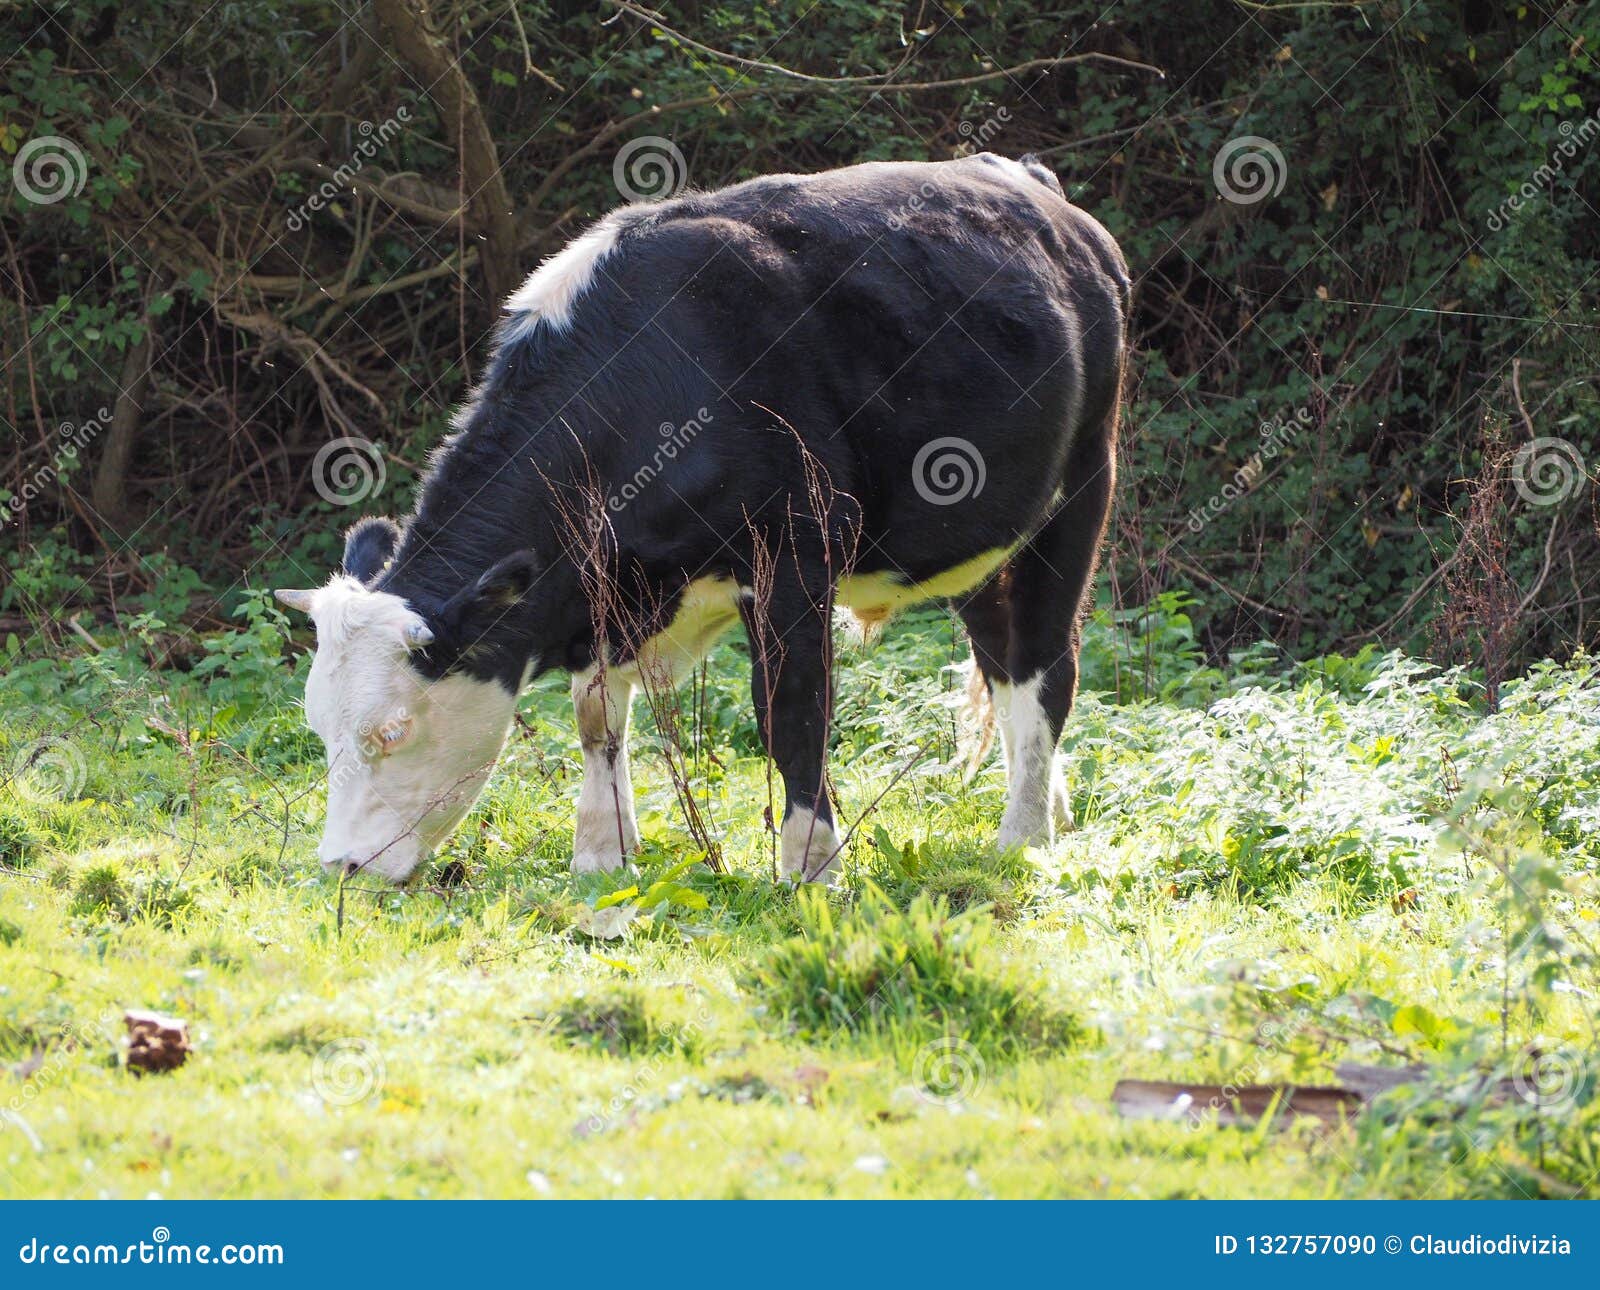 coe fen meadowland cattle in cambridge